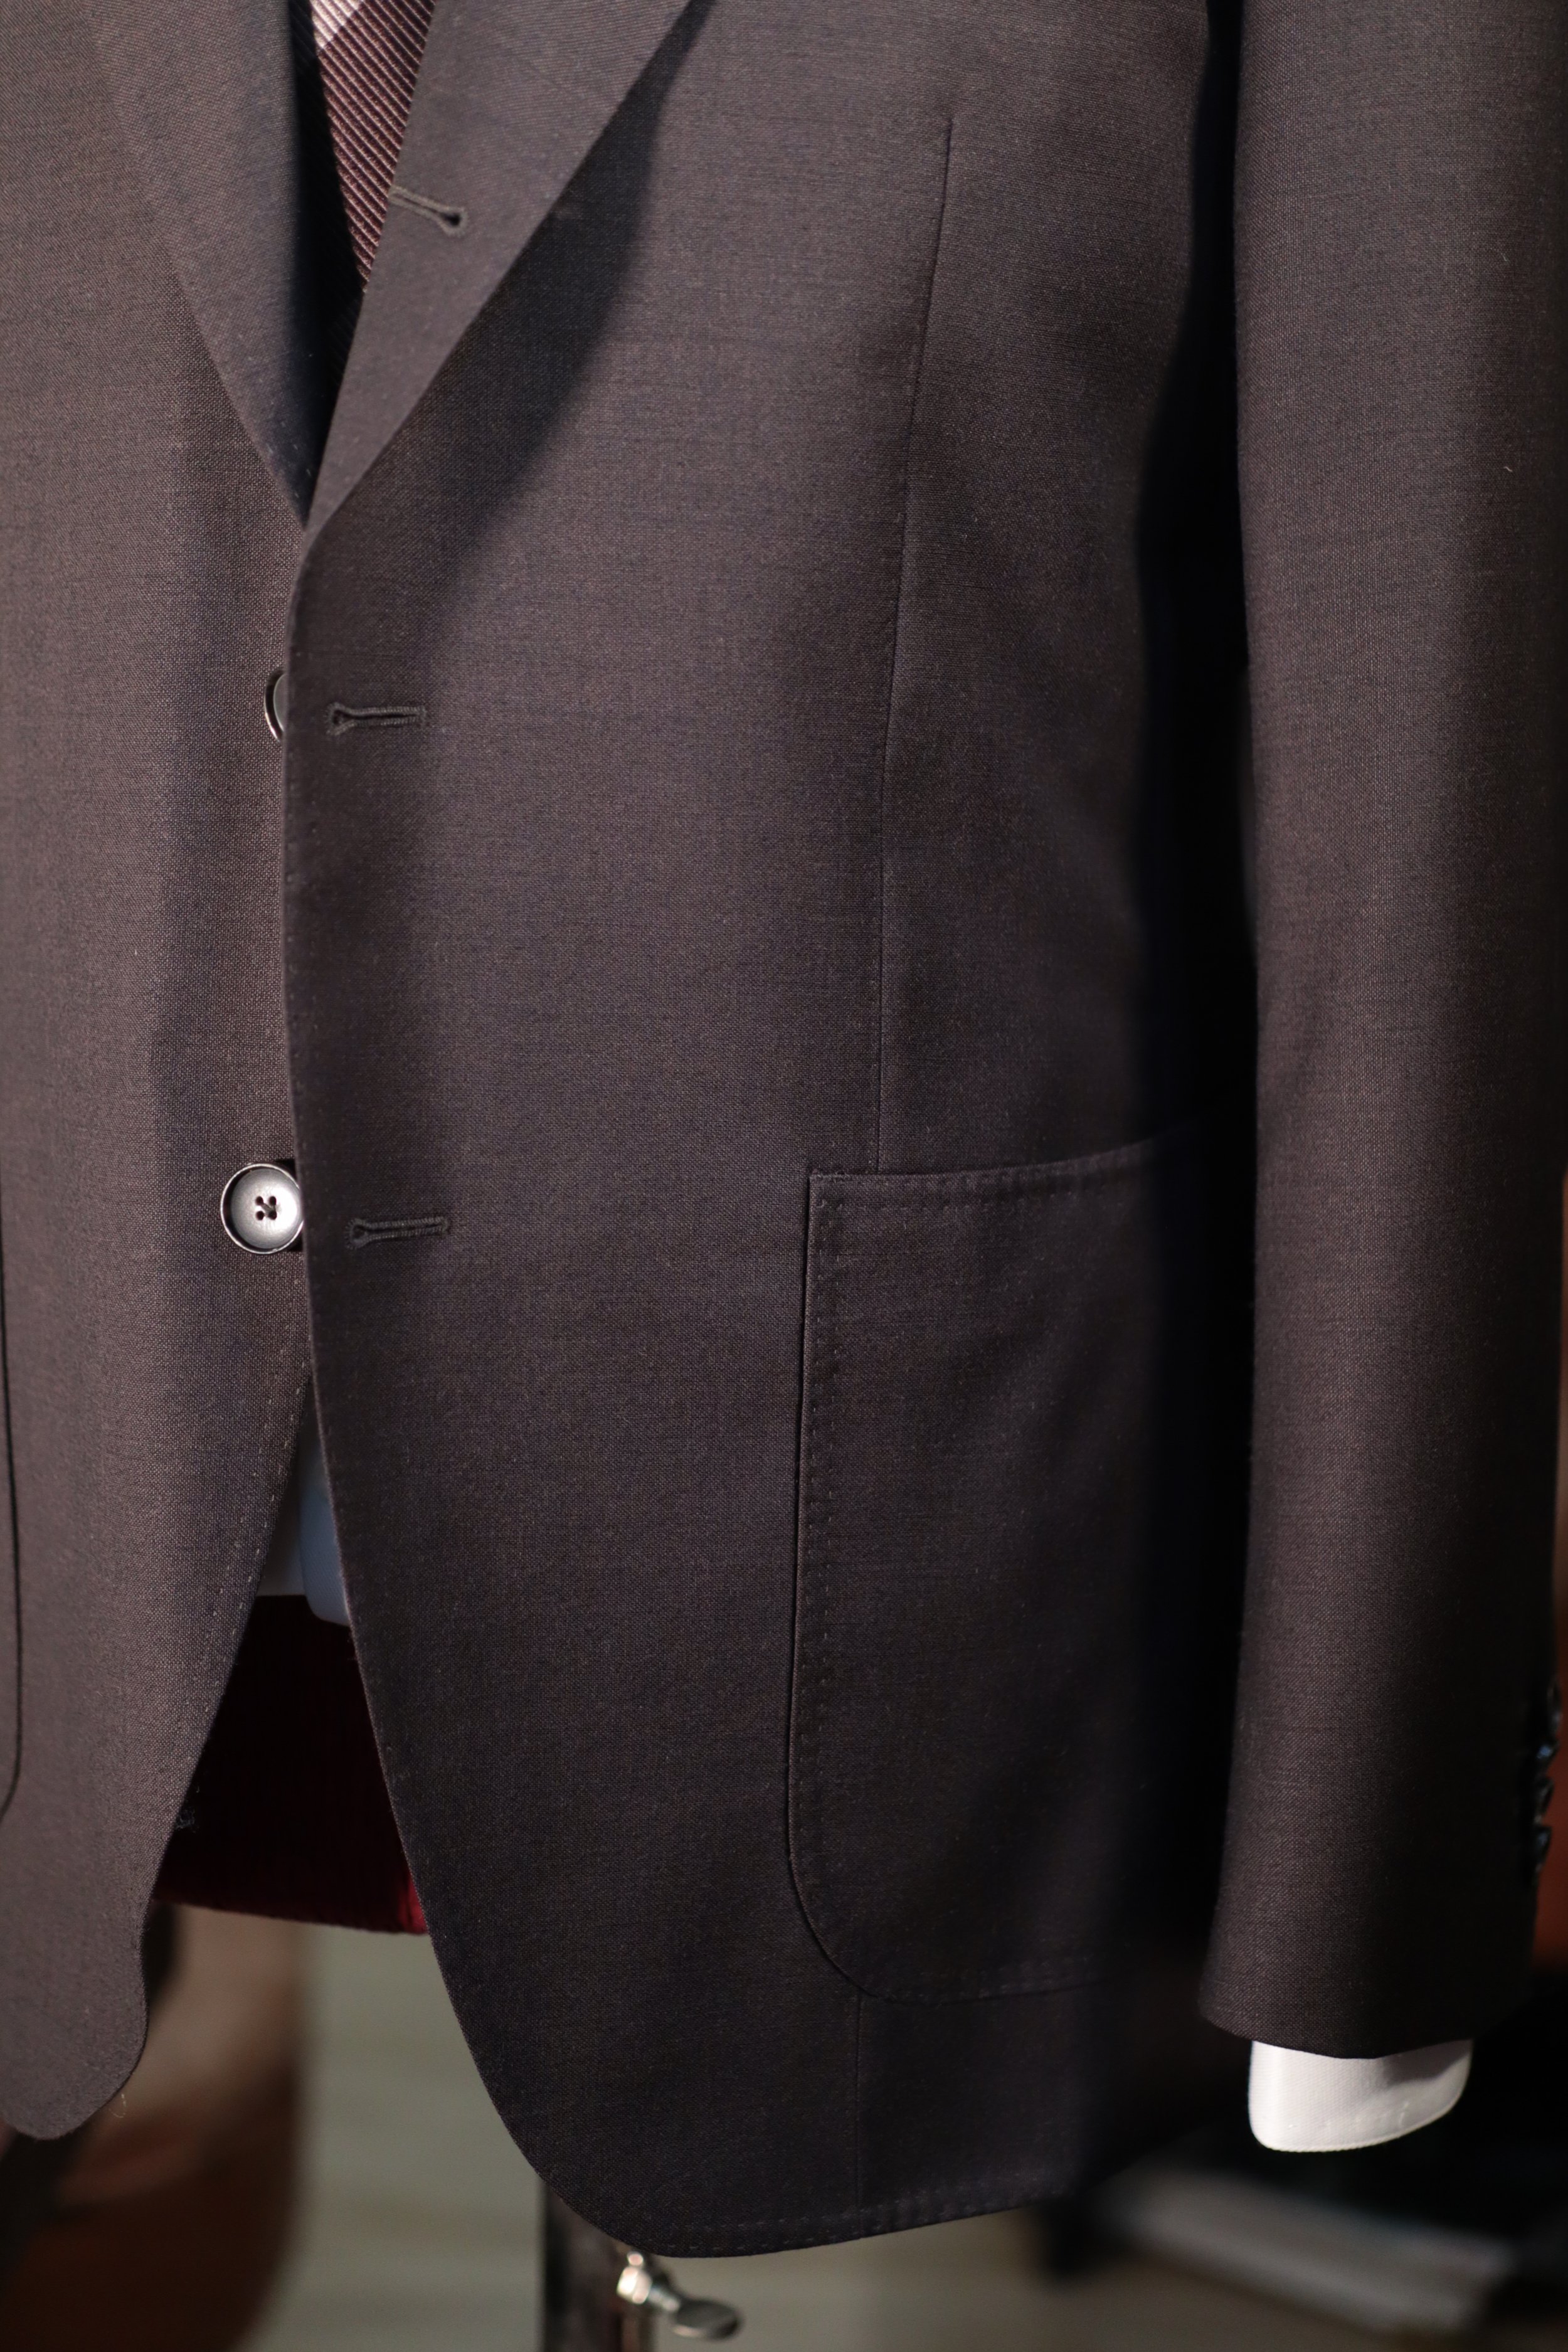 Made Suits® Singapore Tailor — Sartorial